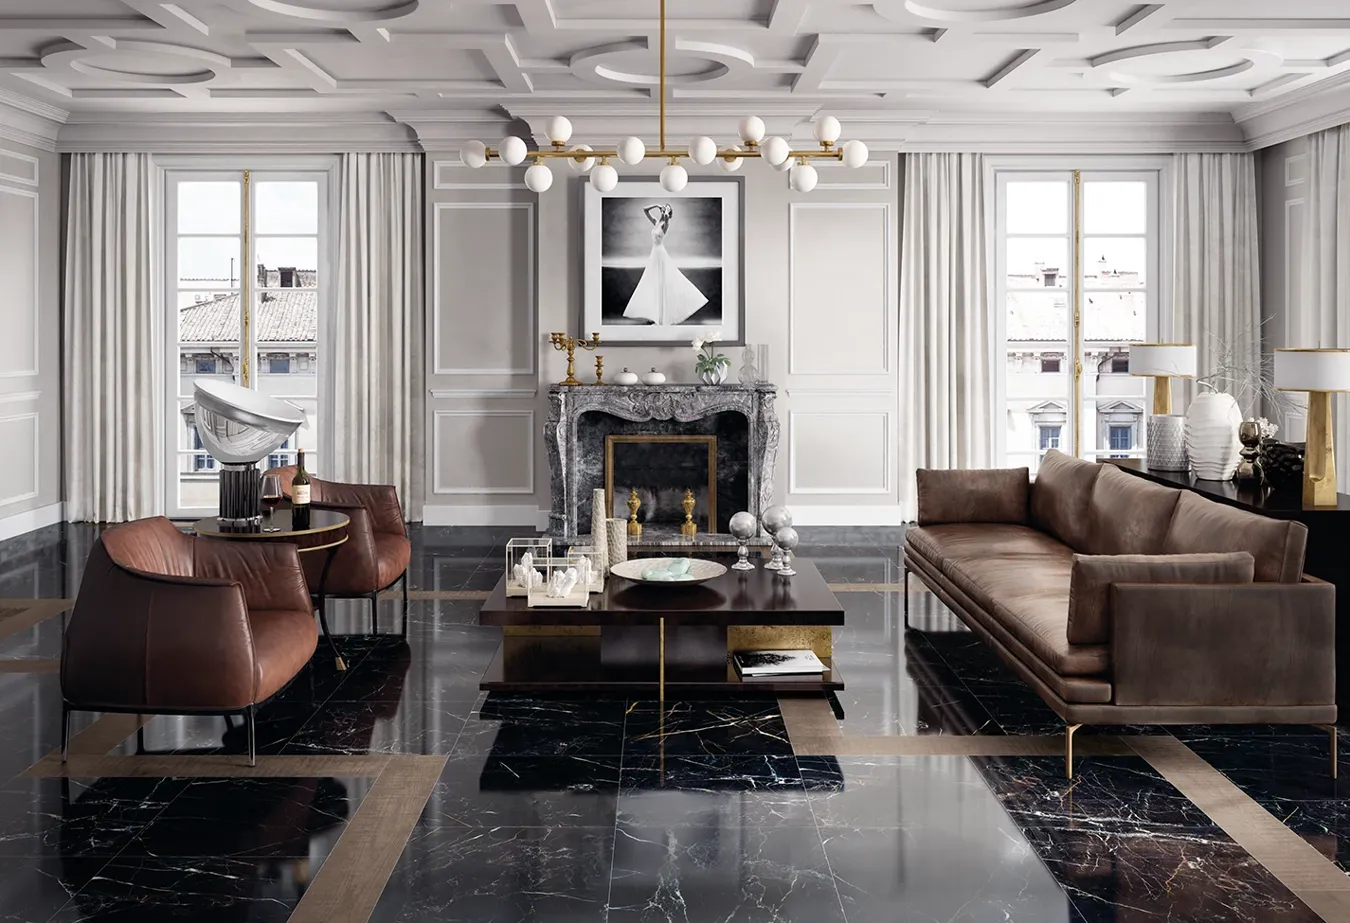 Luxuriöses Interieur mit Port Laurent Marmor-Effekt Feinsteinzeugboden der Elements Lux Kollektion, ergänzt durch braune Ledermöbel und goldene Details.